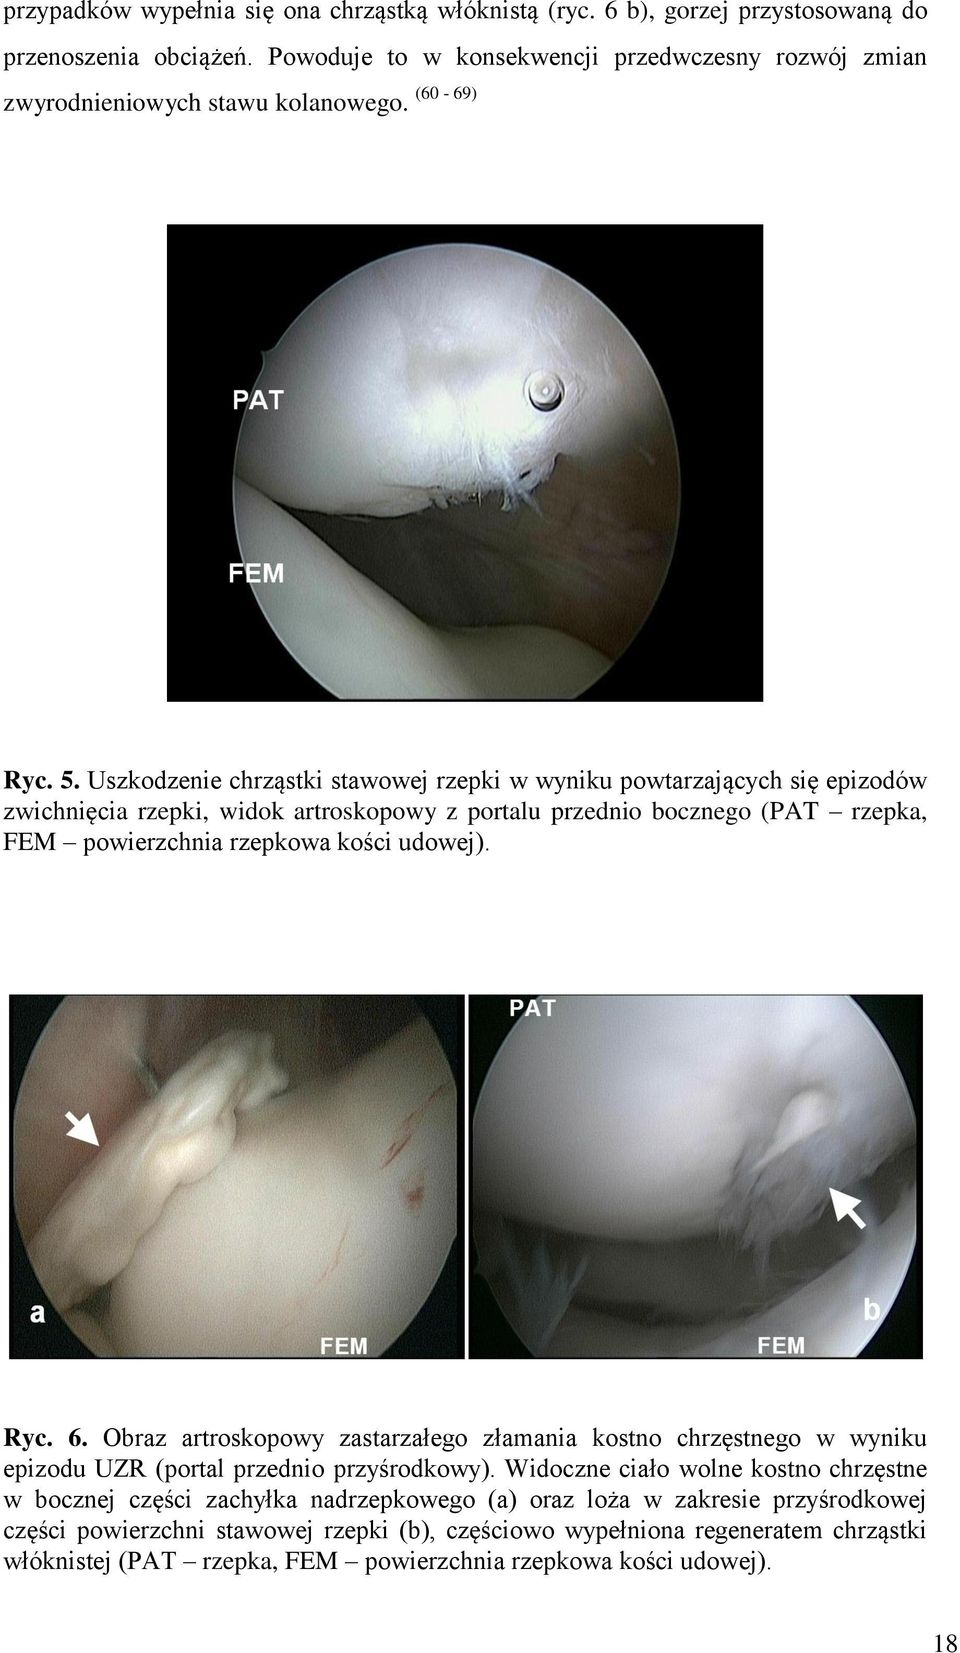 Uszkodzenie chrząstki stawowej rzepki w wyniku powtarzających się epizodów zwichnięcia rzepki, widok artroskopowy z portalu przednio bocznego (PAT rzepka, FEM powierzchnia rzepkowa kości udowej).